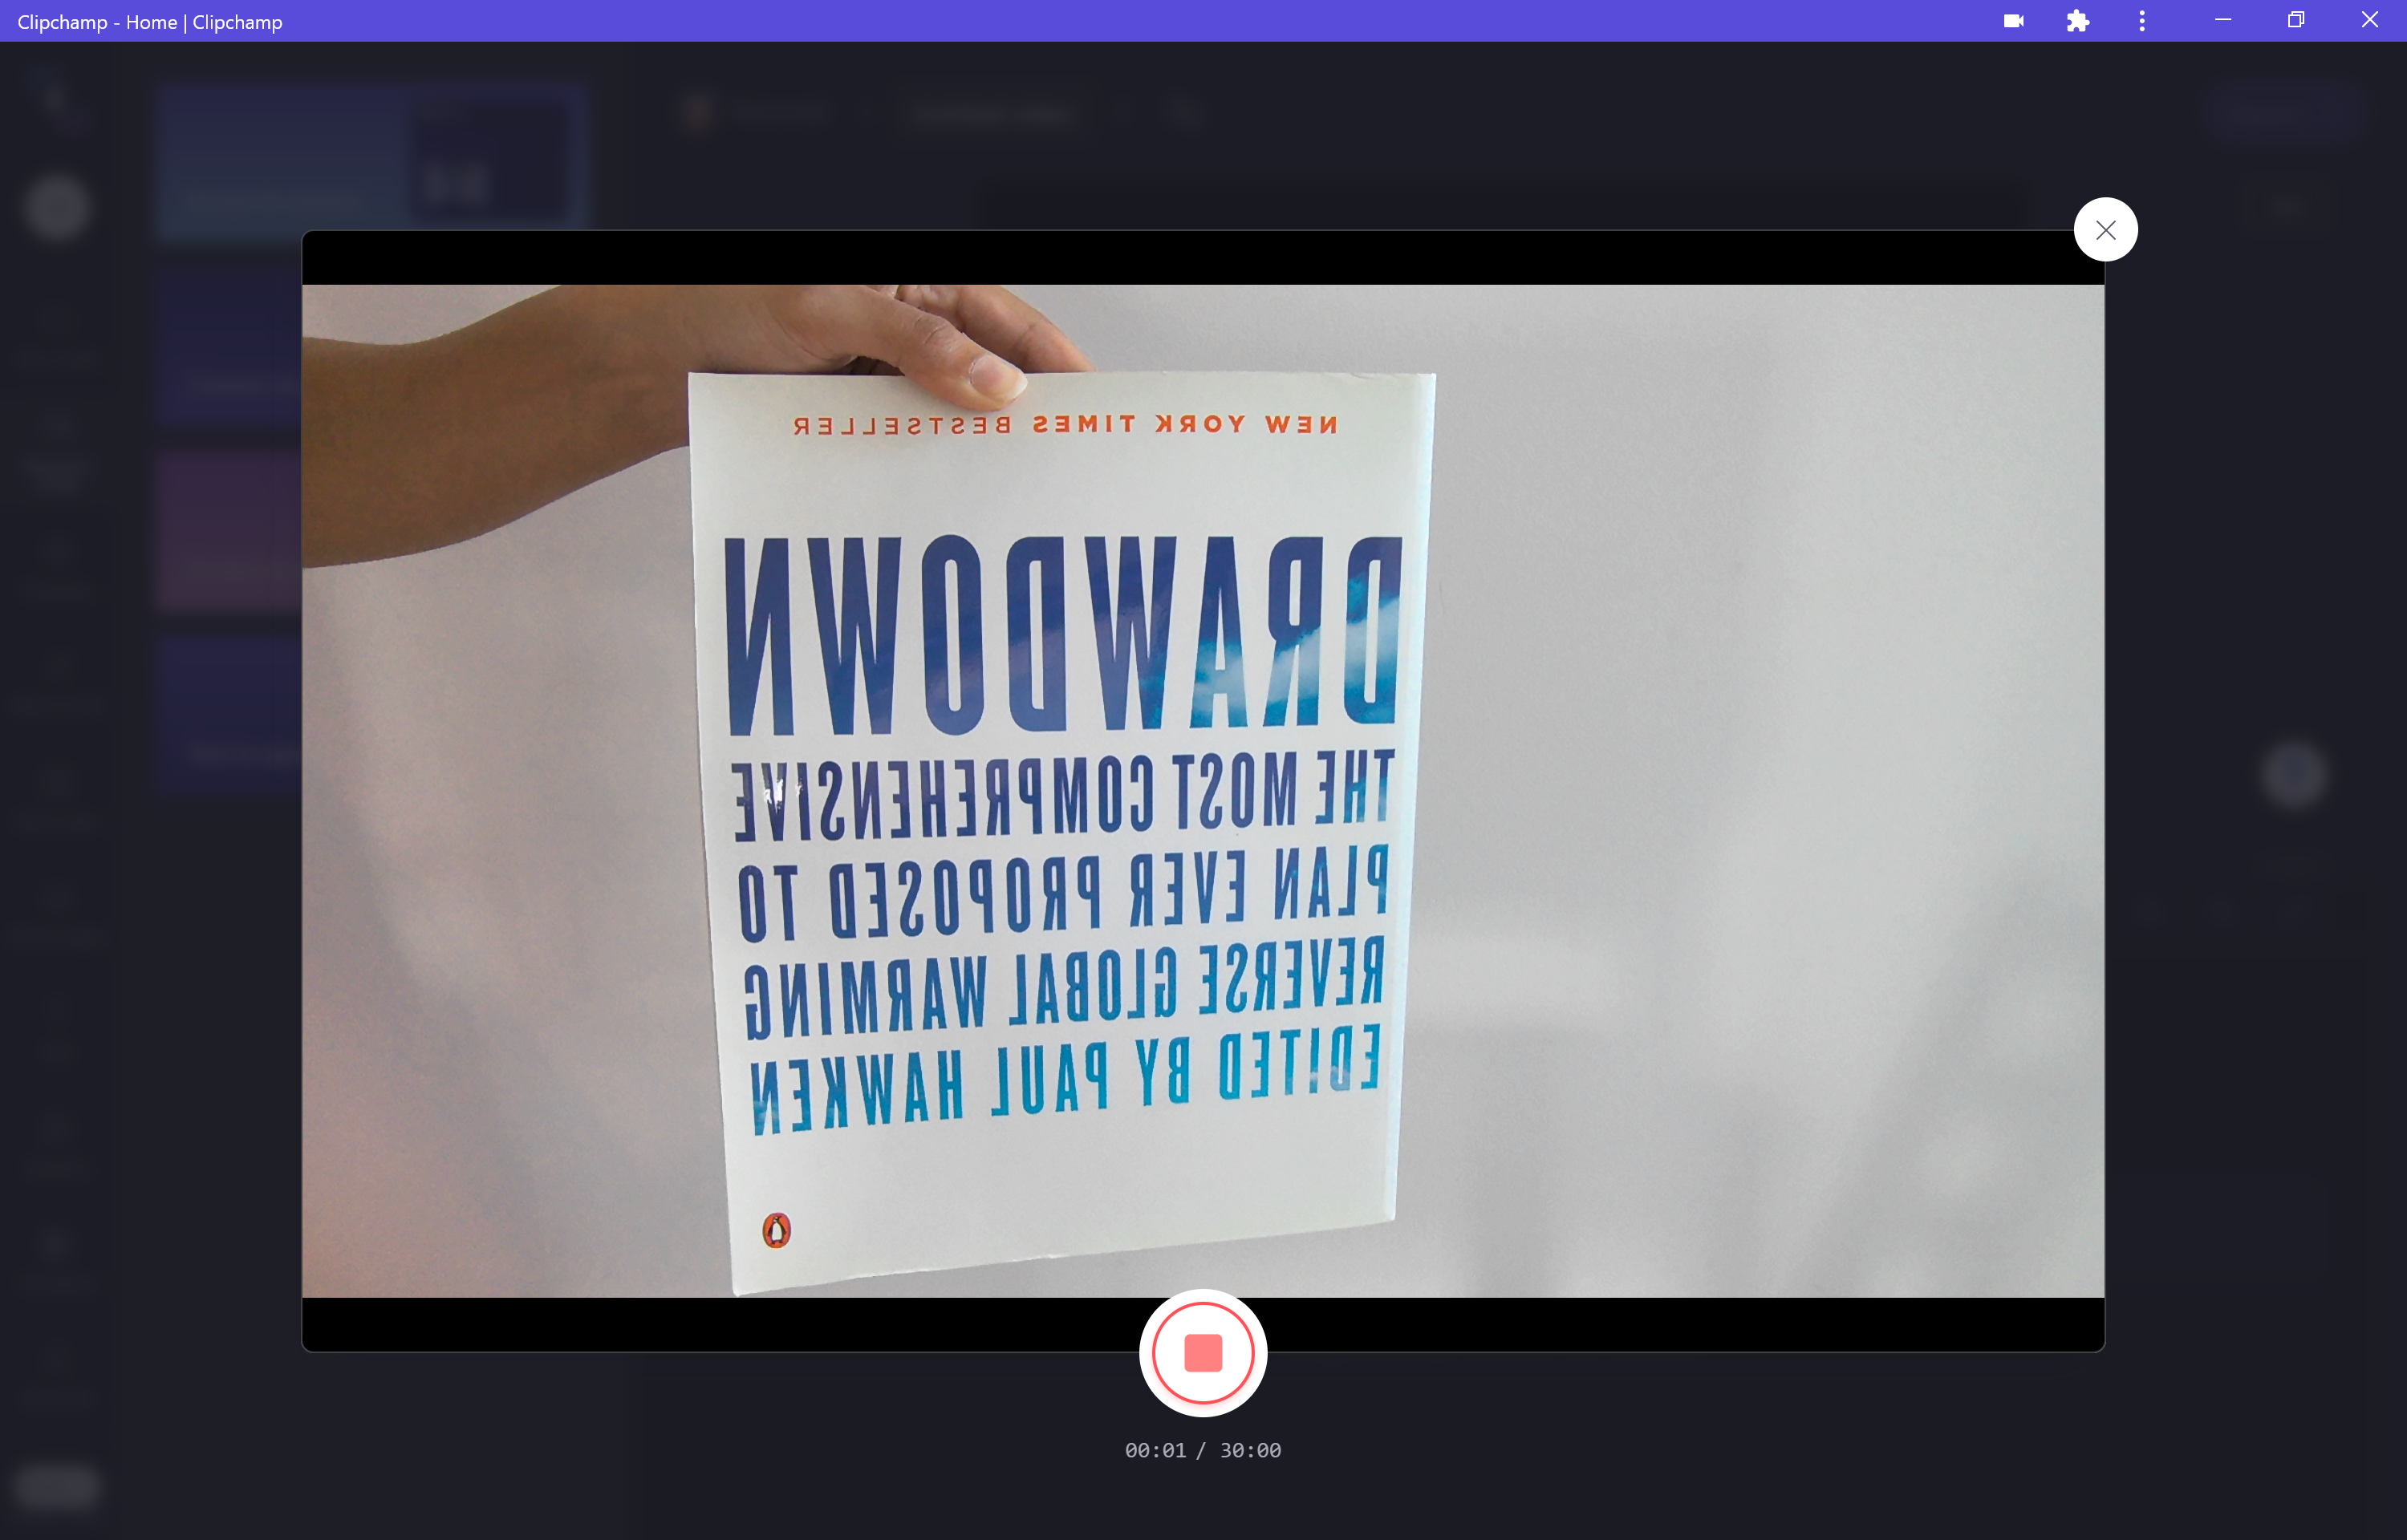 Obrázok ukážky záznamníka webovej kamery Clipchamp zobrazujúci text sprava doľava